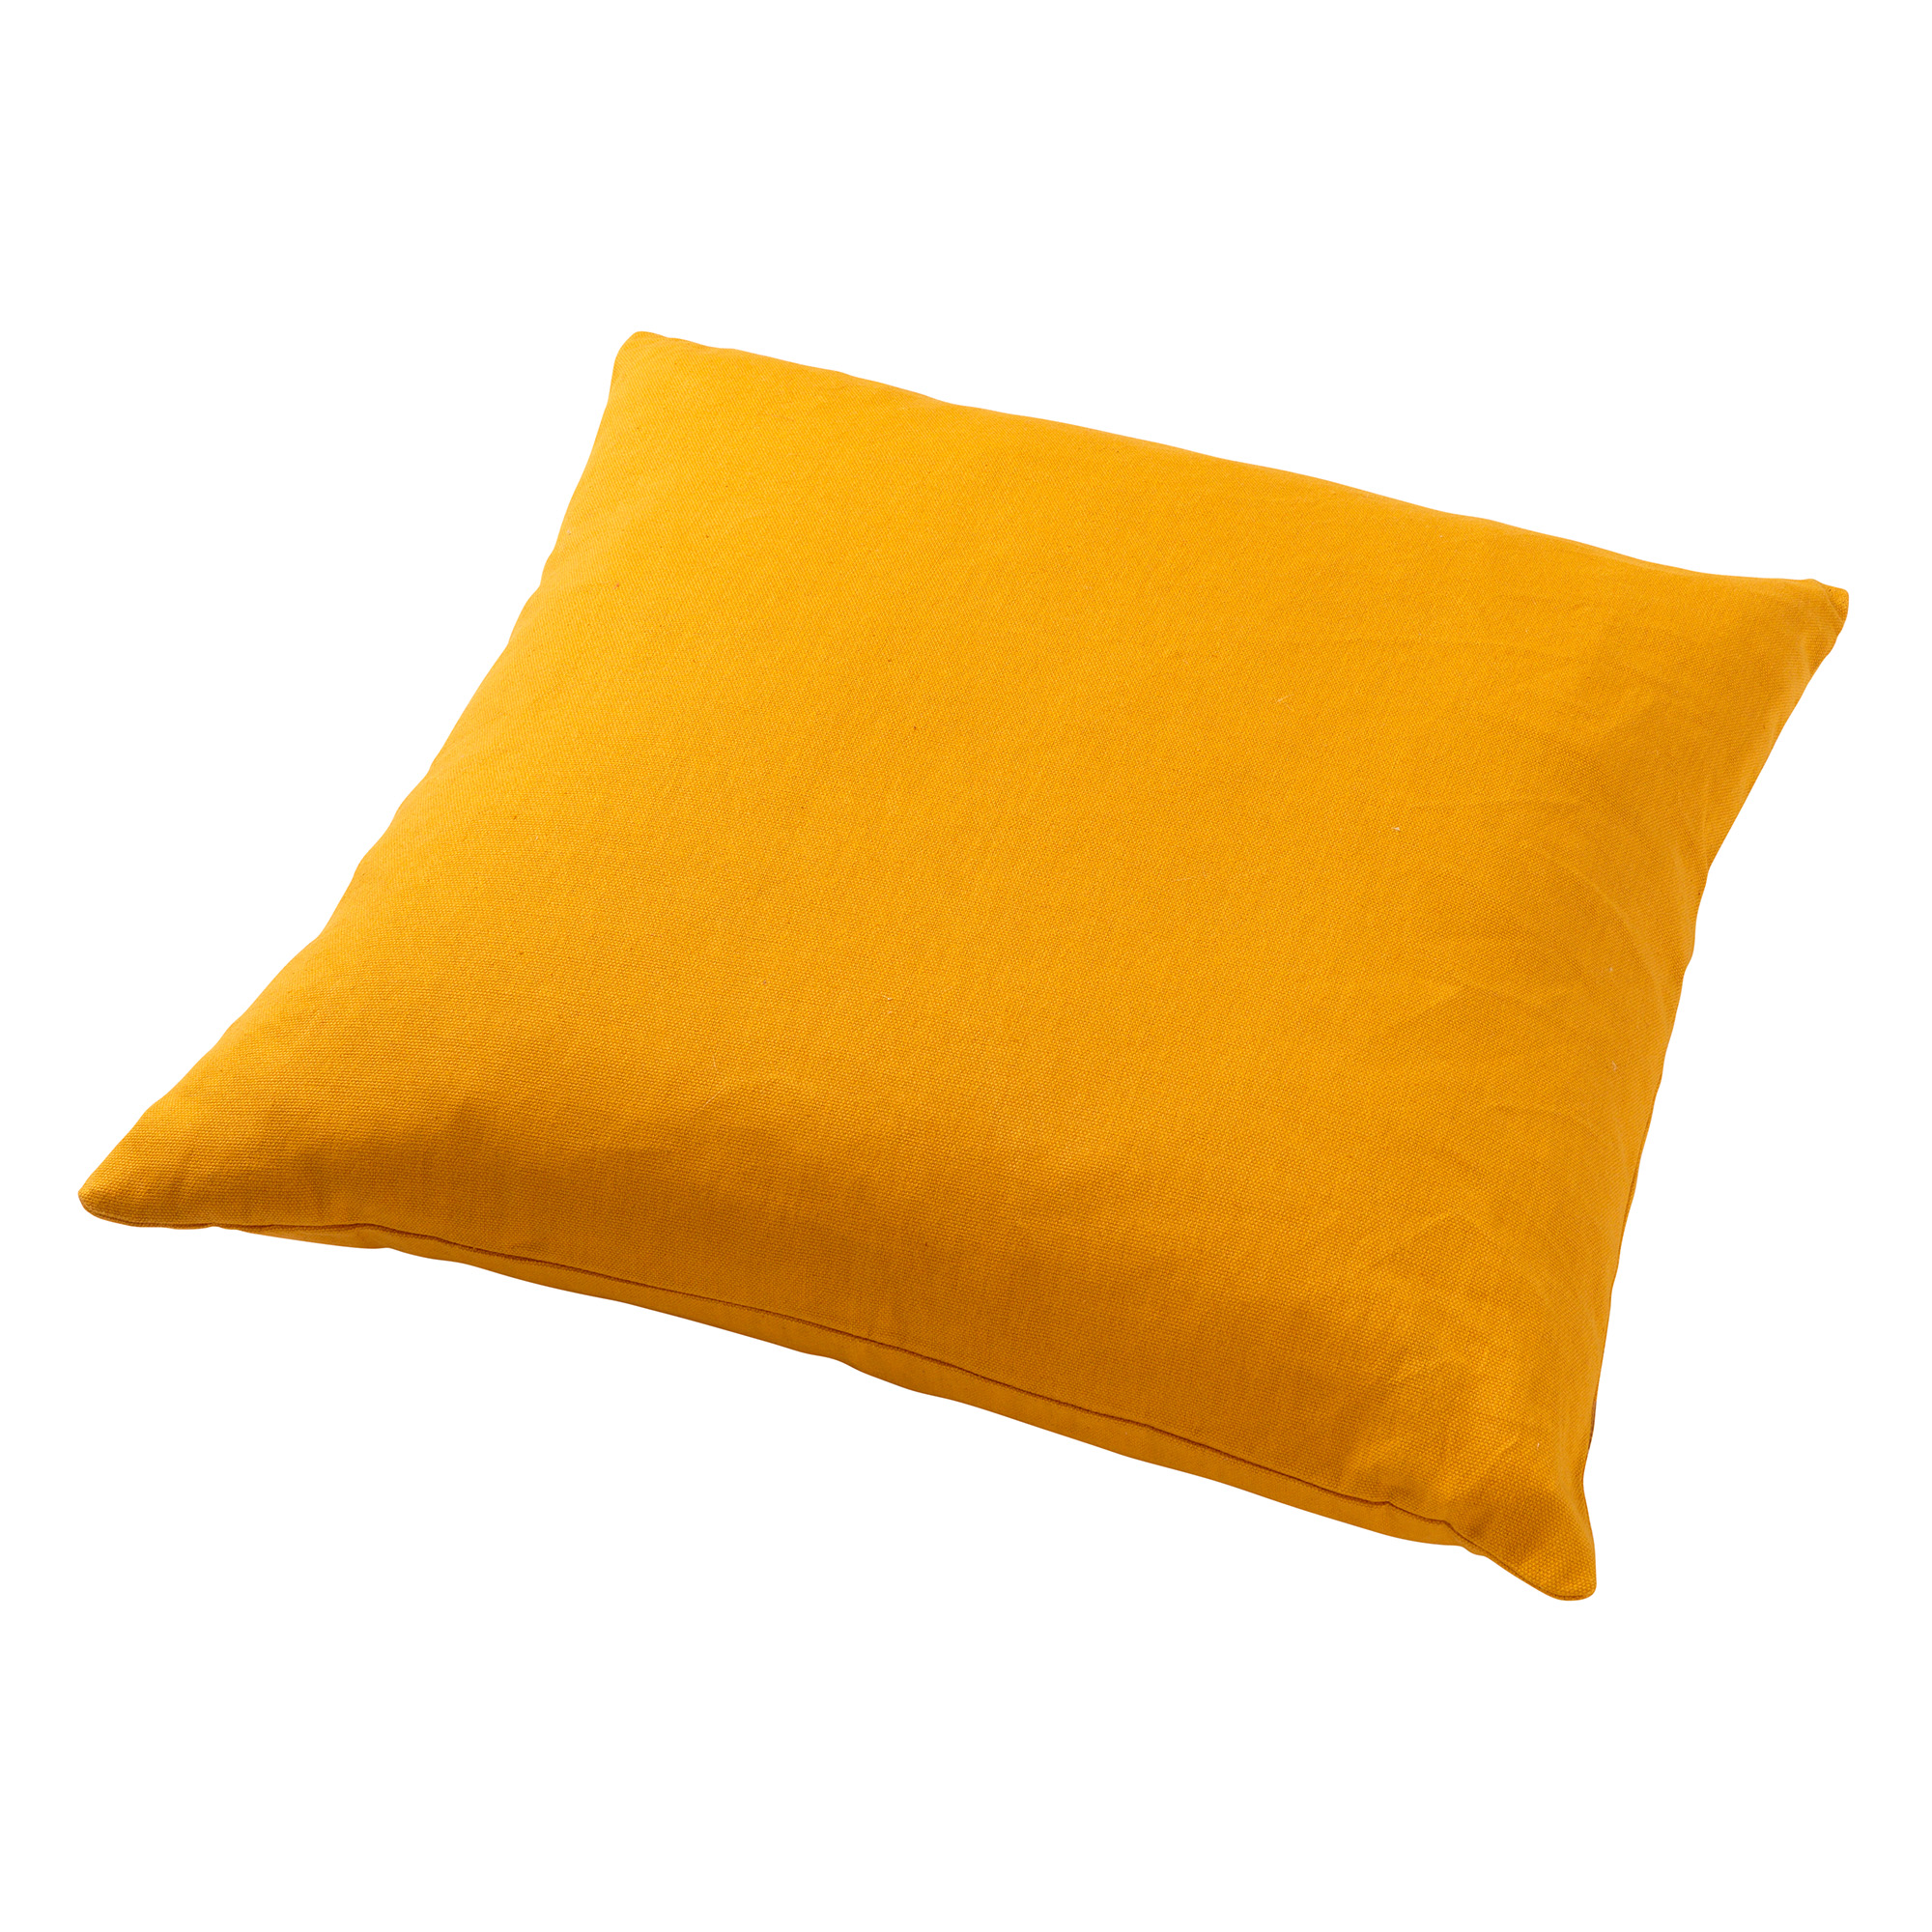 JAMES - Kussenhoes 45x45 cm - duurzaam katoen - effen kleur - Golden Glow - geel